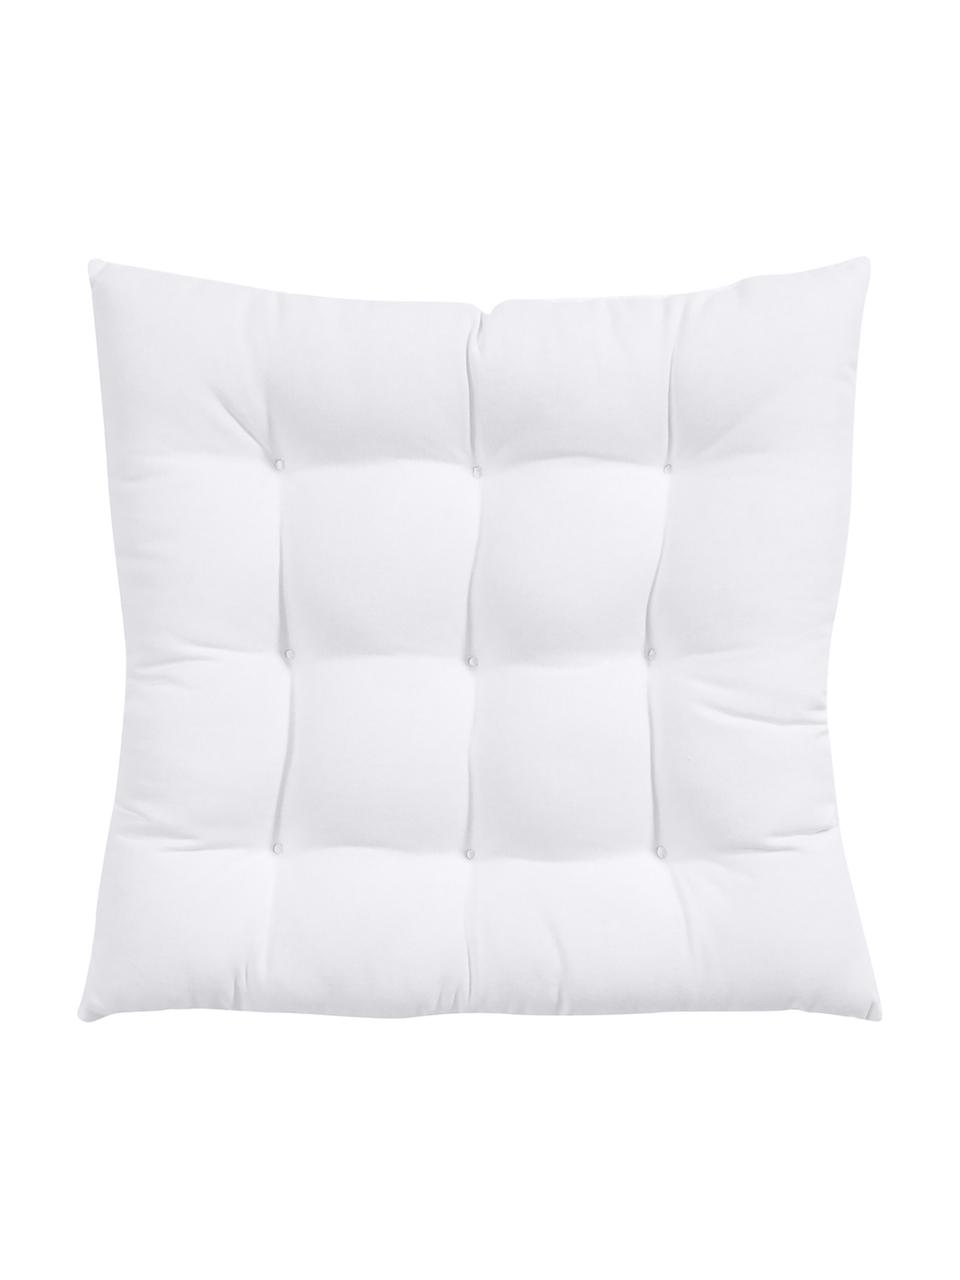 Baumwoll-Sitzkissen Ava in Weiß, Bezug: 100% Baumwolle, Weiß, B 40 x L 40 cm